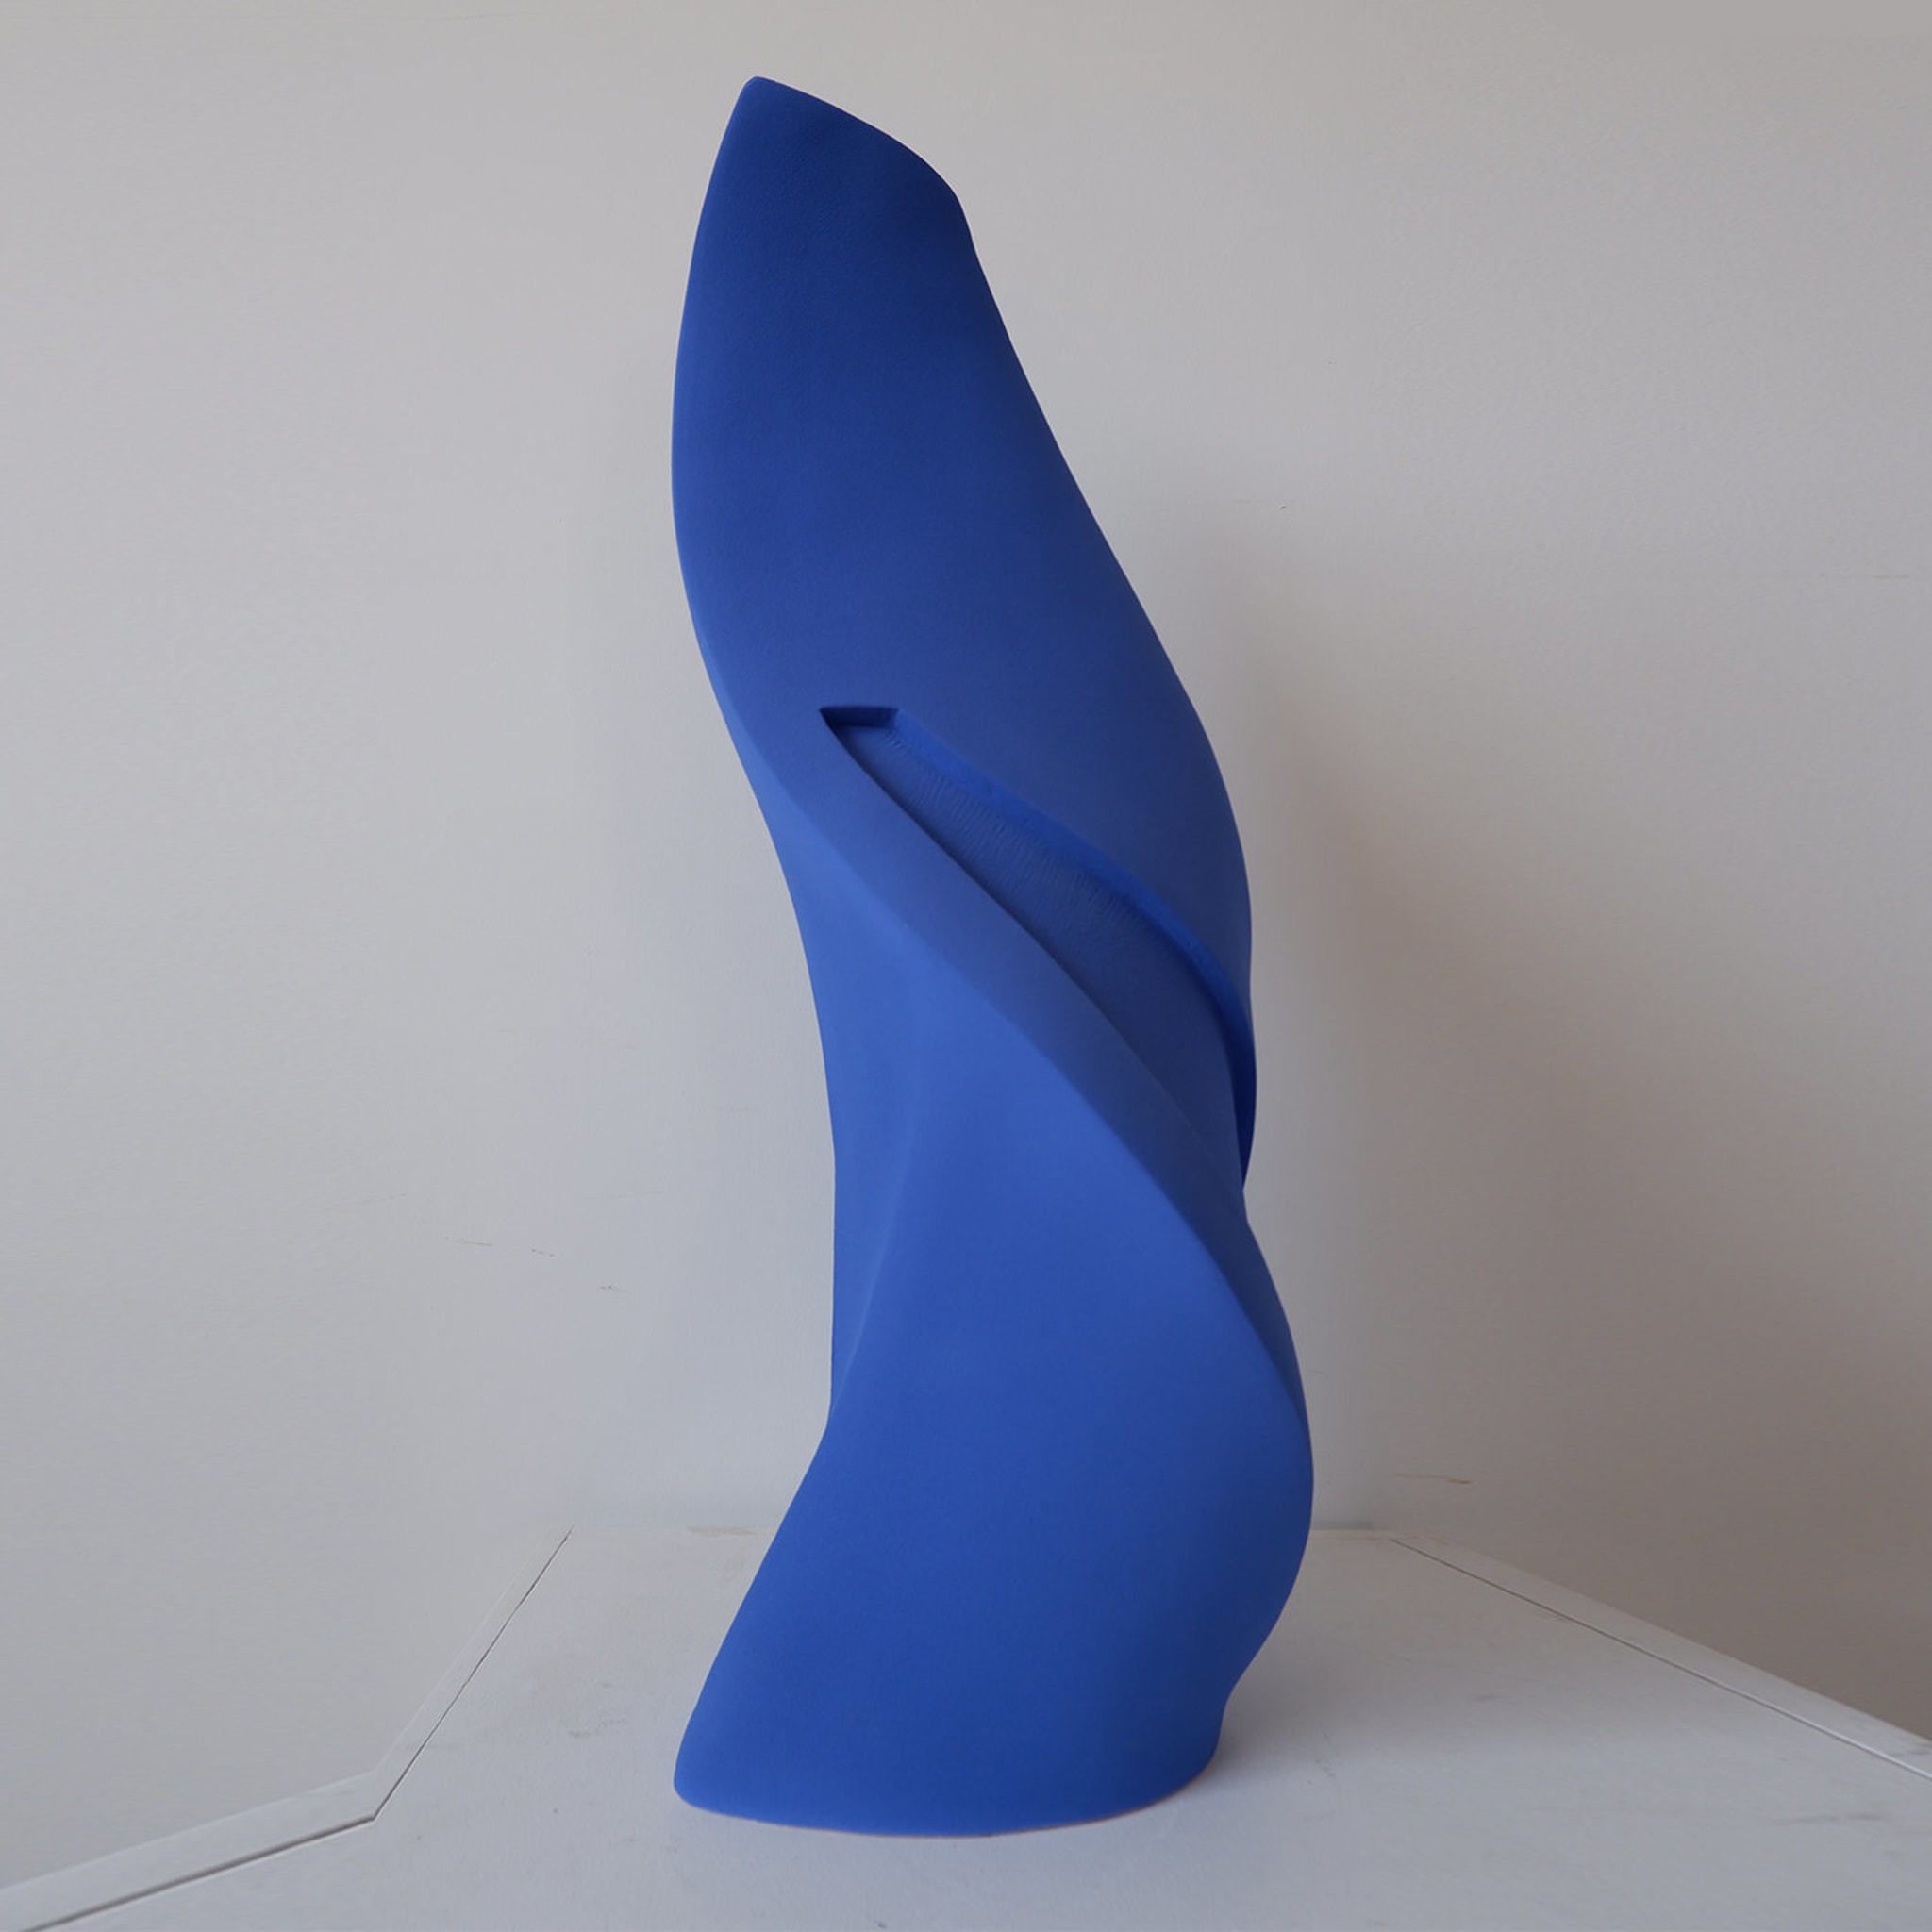 Blue Demeter Vase #3 - Alternative view 1